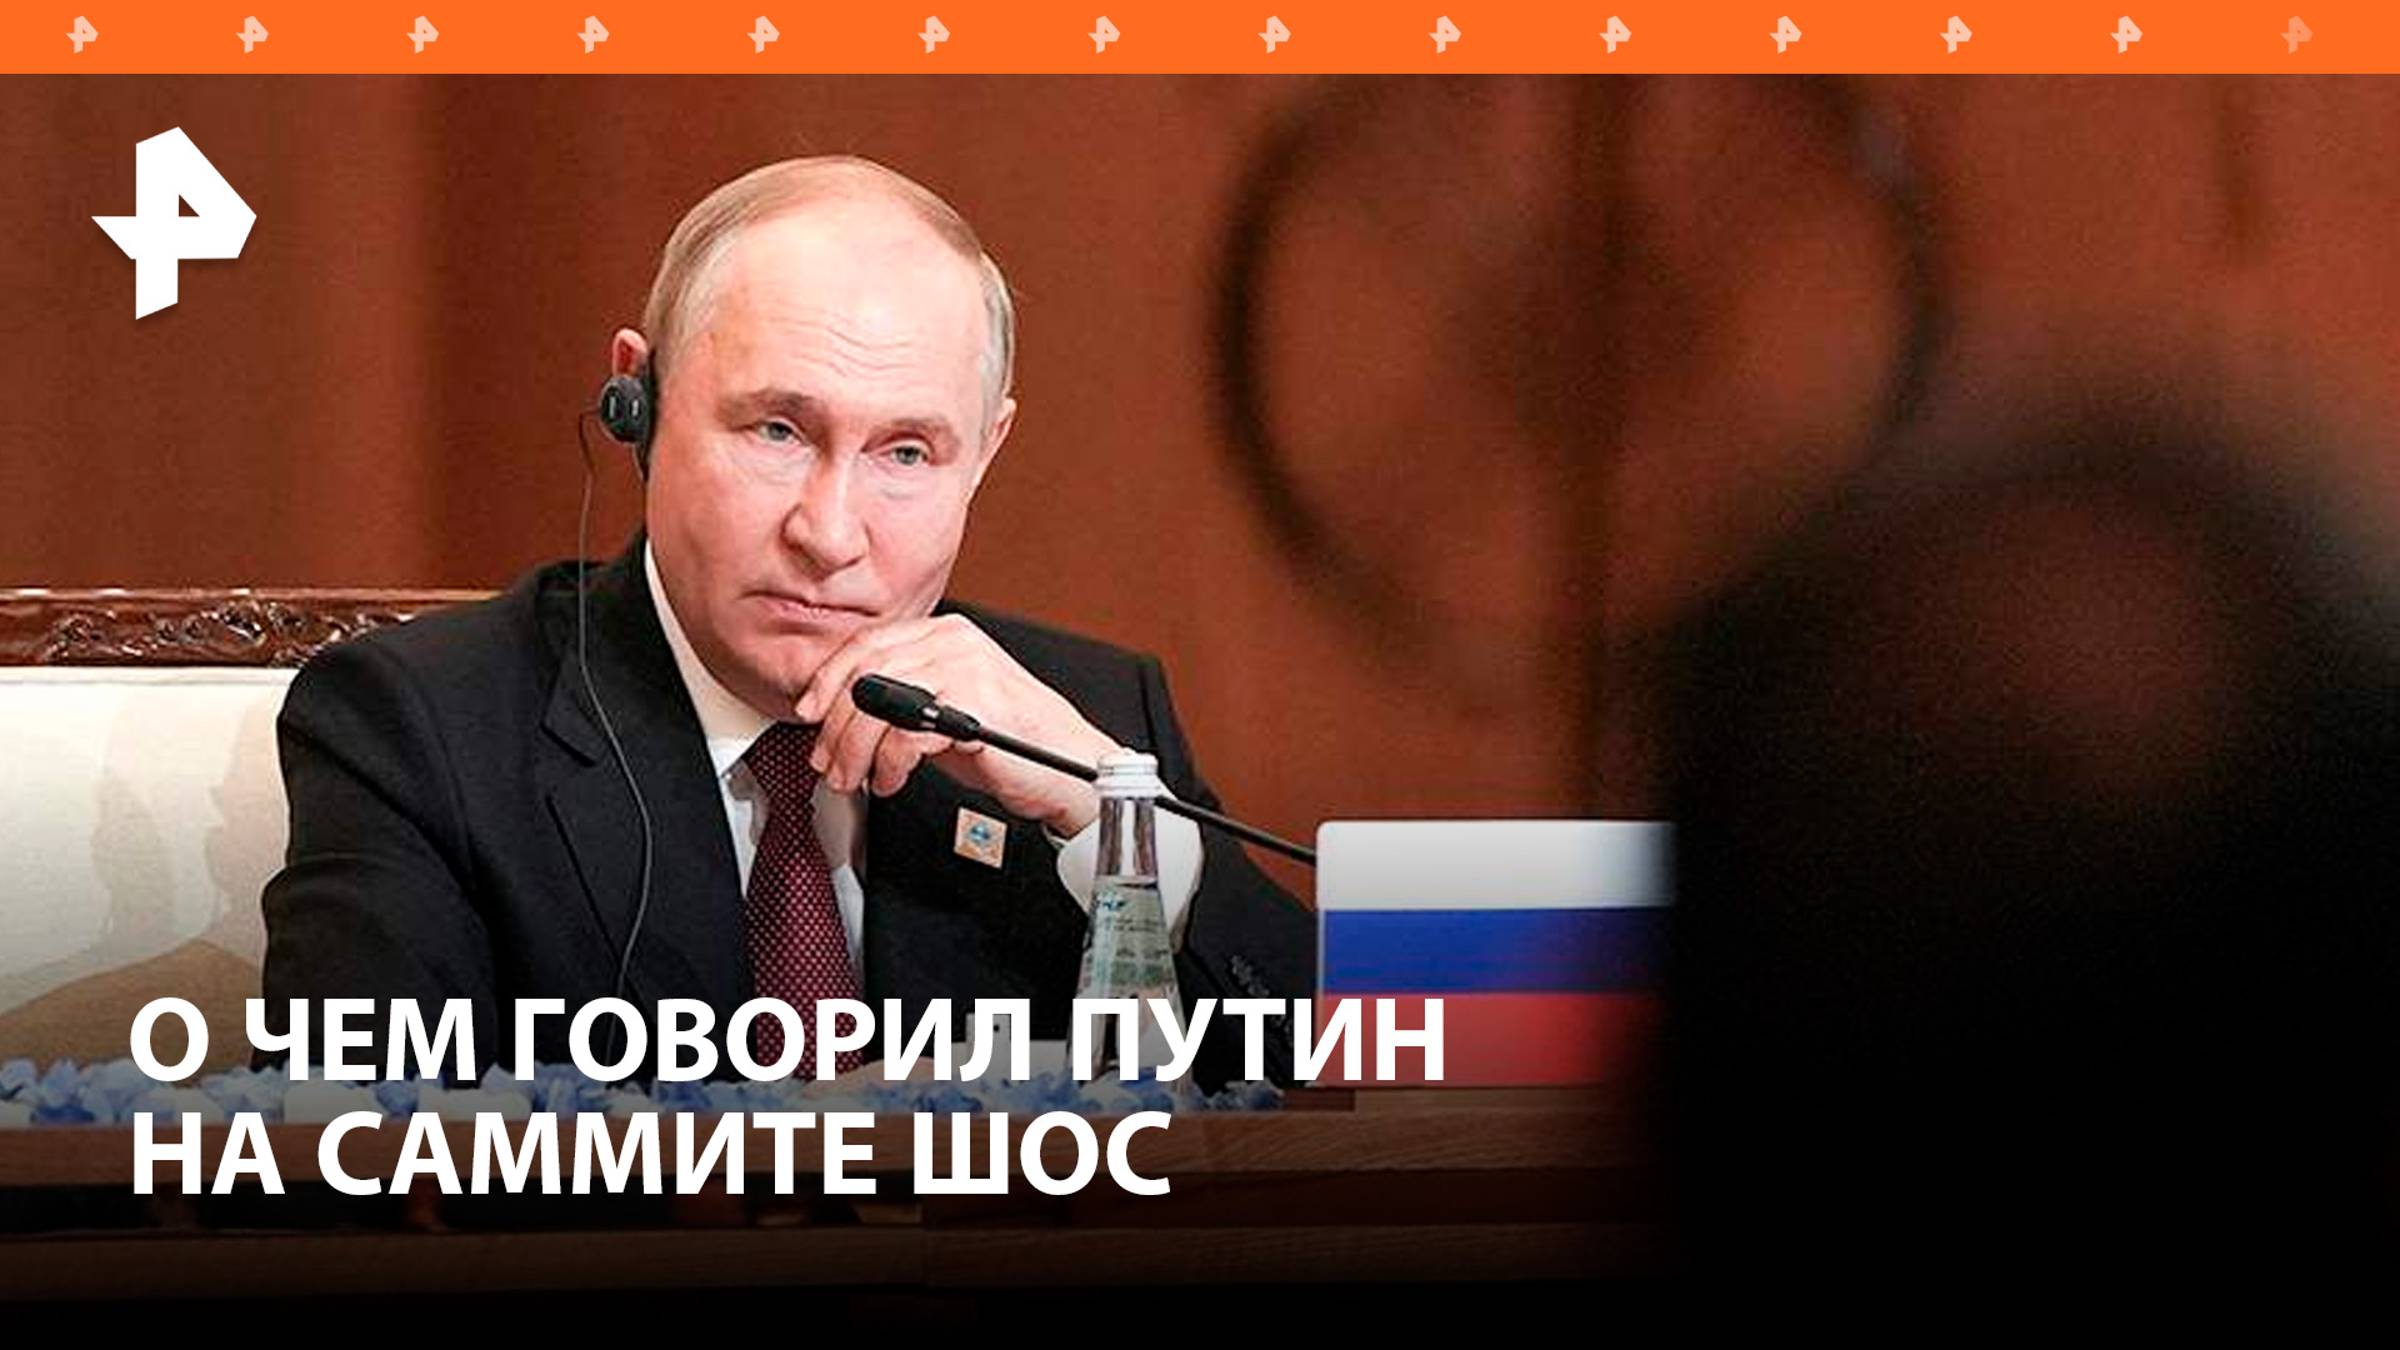 Выборы в США и прекращение огня: о чем говорил Путин после саммита ШОС